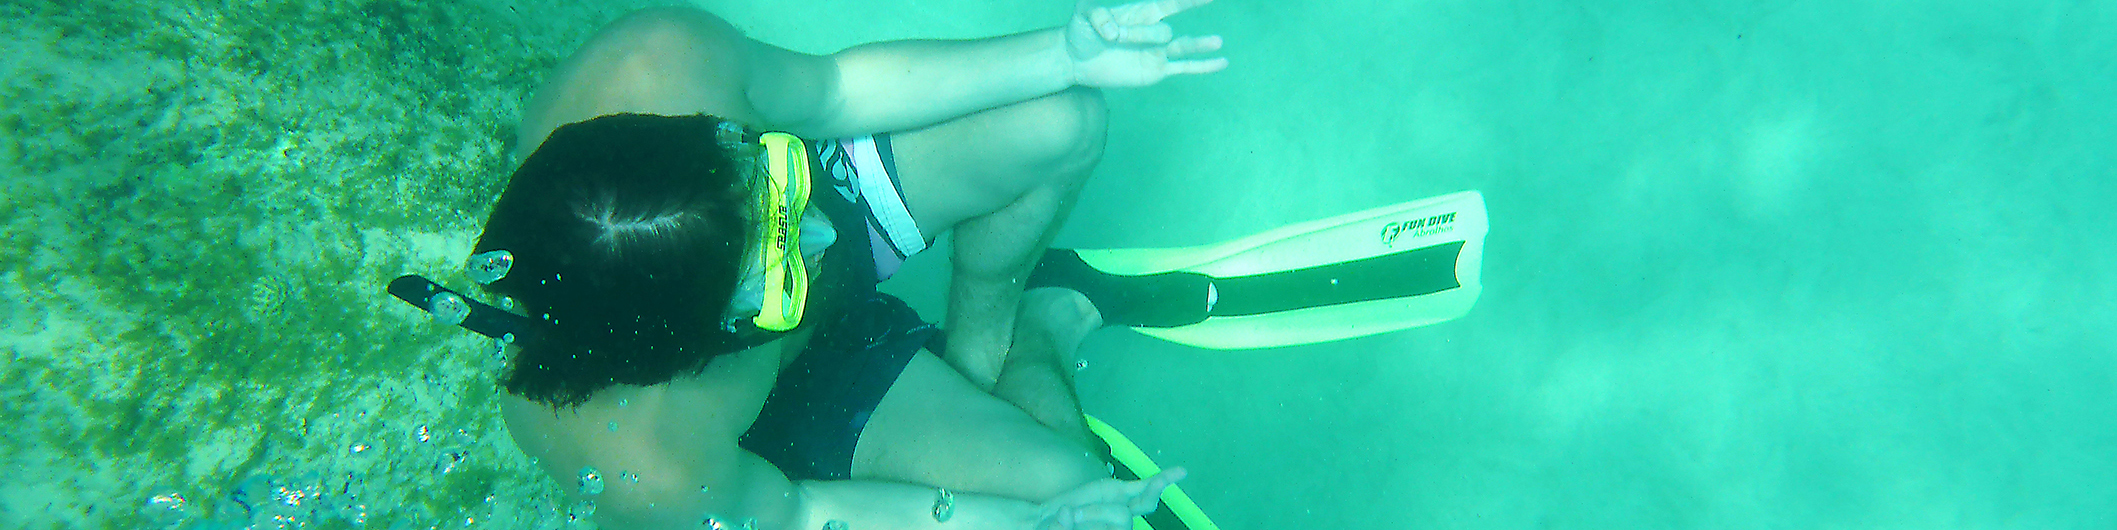 Eine Unterwasser Fotografie von ein Man unterwasser, er ist in meditations pose mit gekreuzte Beinen. Es ist der Meeresgrund zu sehen und ein paar Luftblasen. Der Man ist mein Sohn Simon. Dieses Bild gehört zu meine Page Philosophie